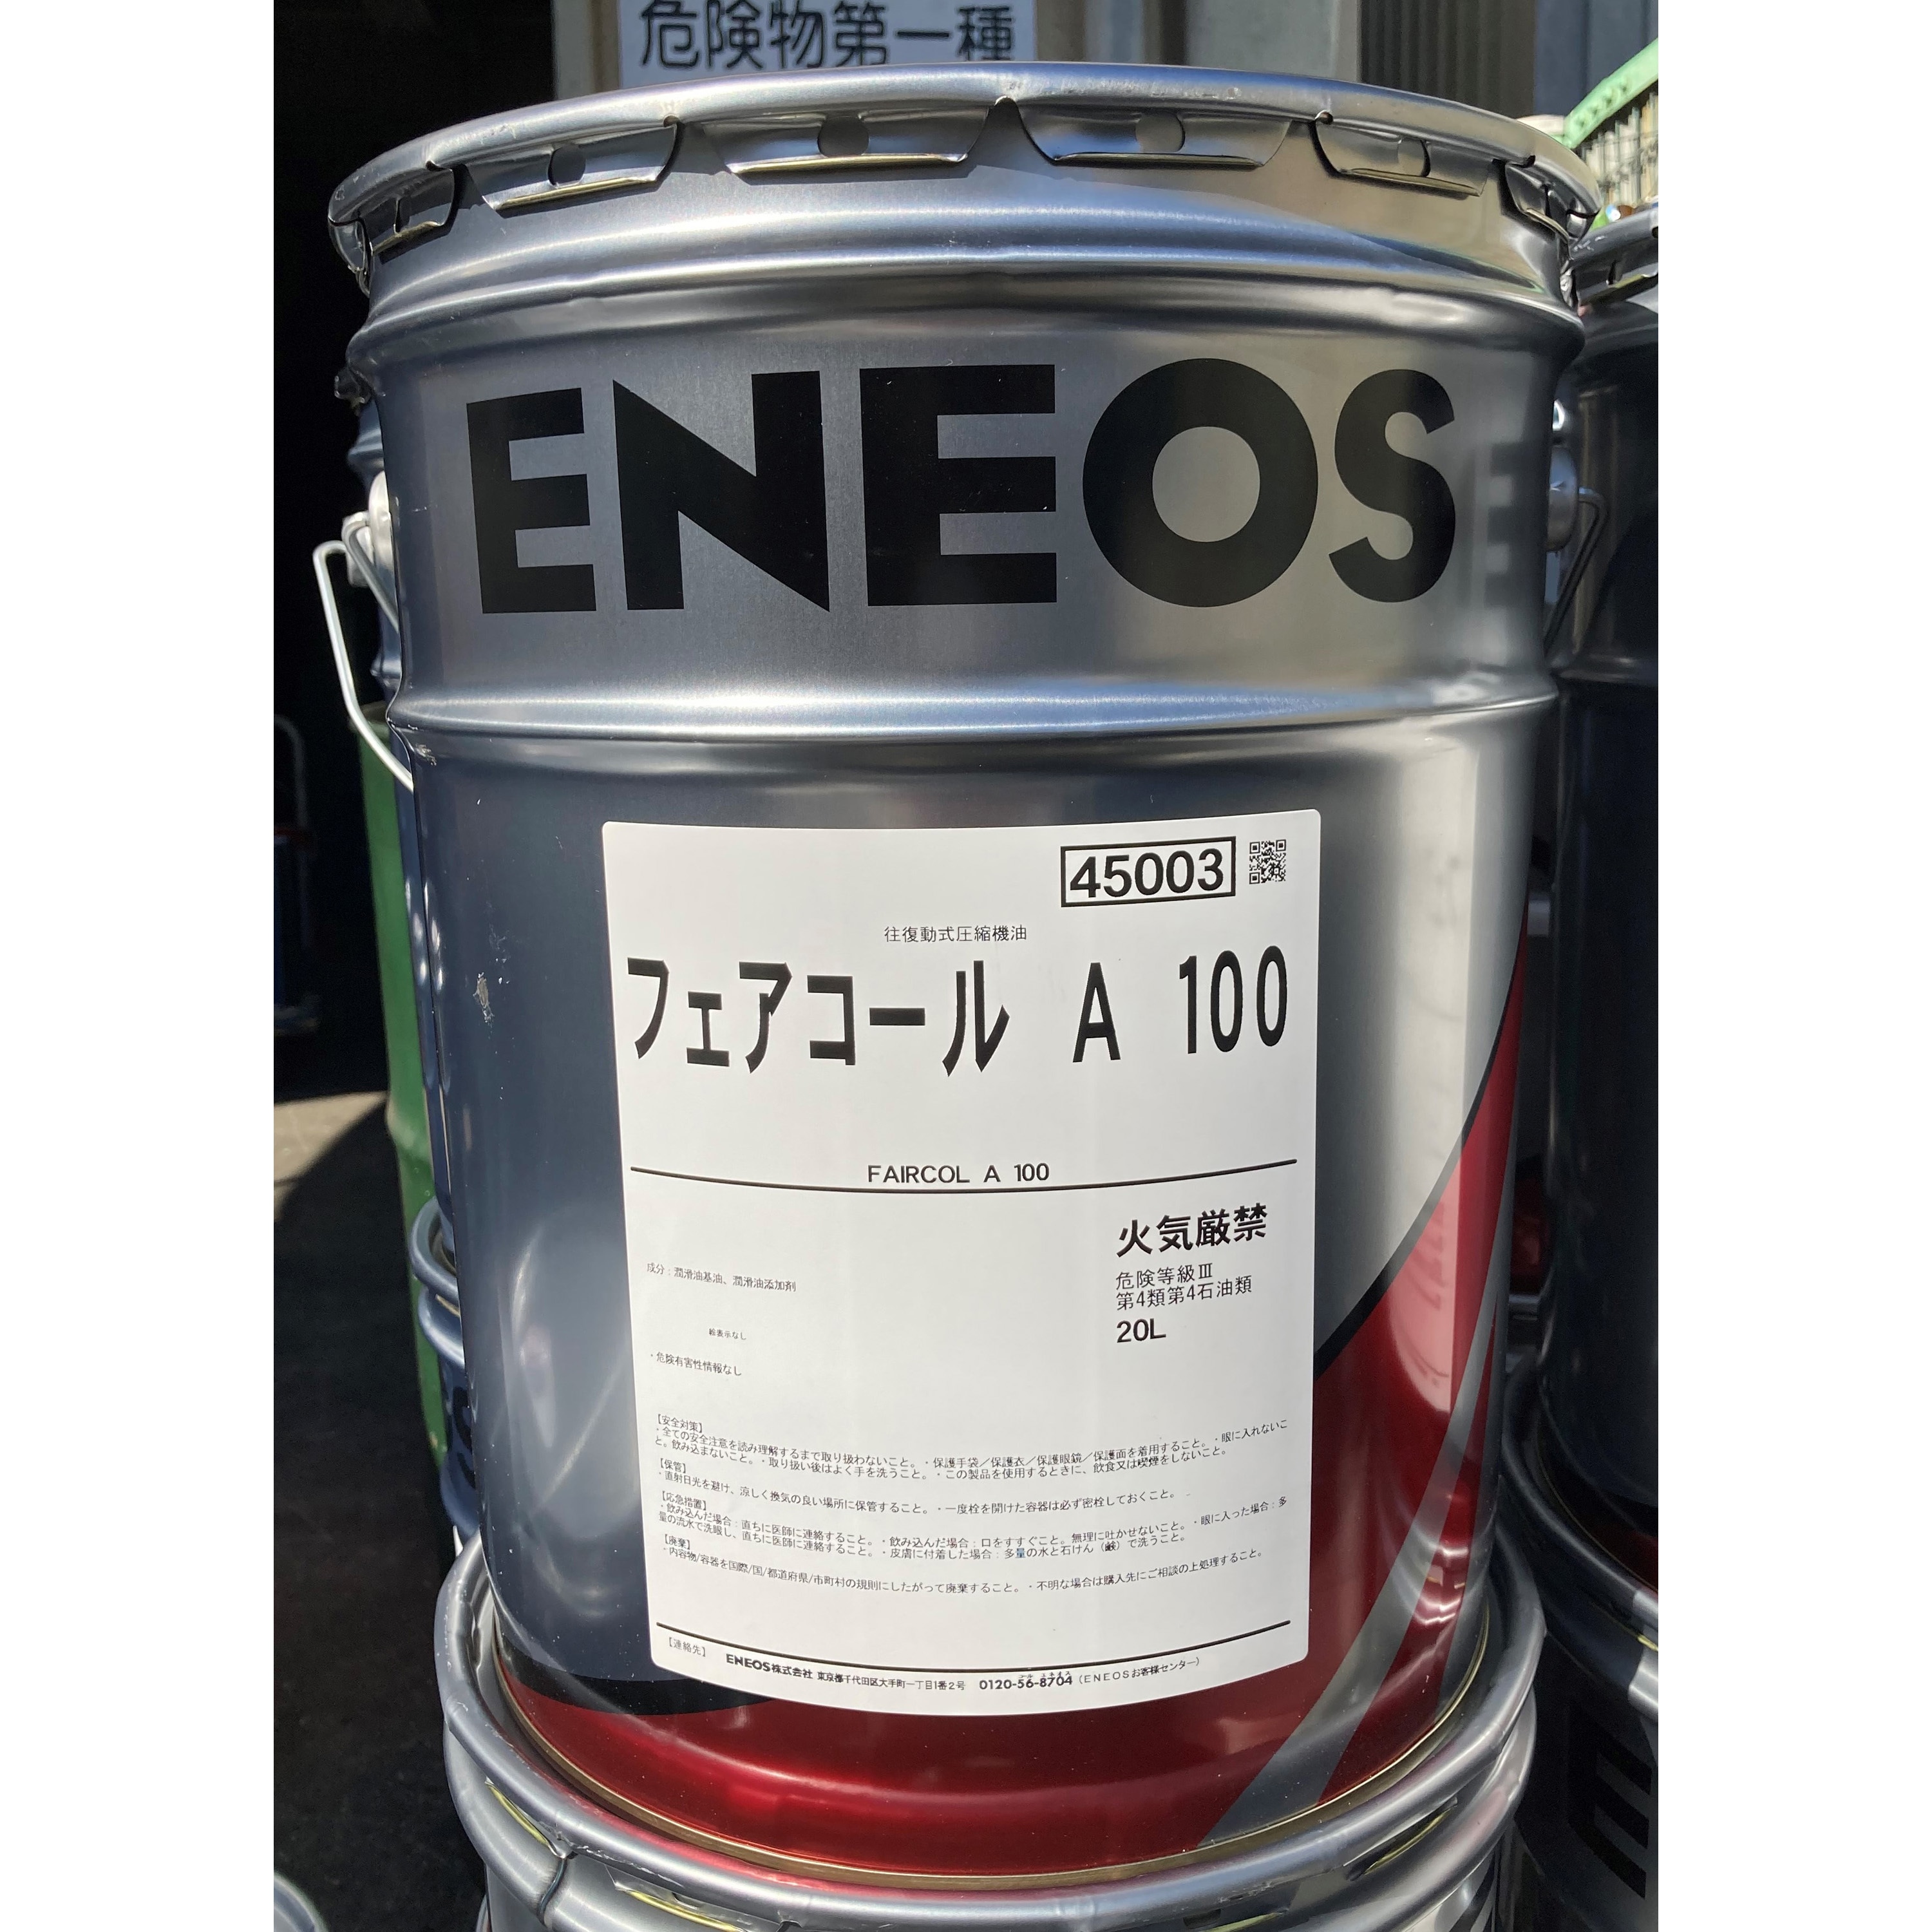 ベンチ 収納付 ENEOS エネオス フェアコールA 100 レシプロ式 